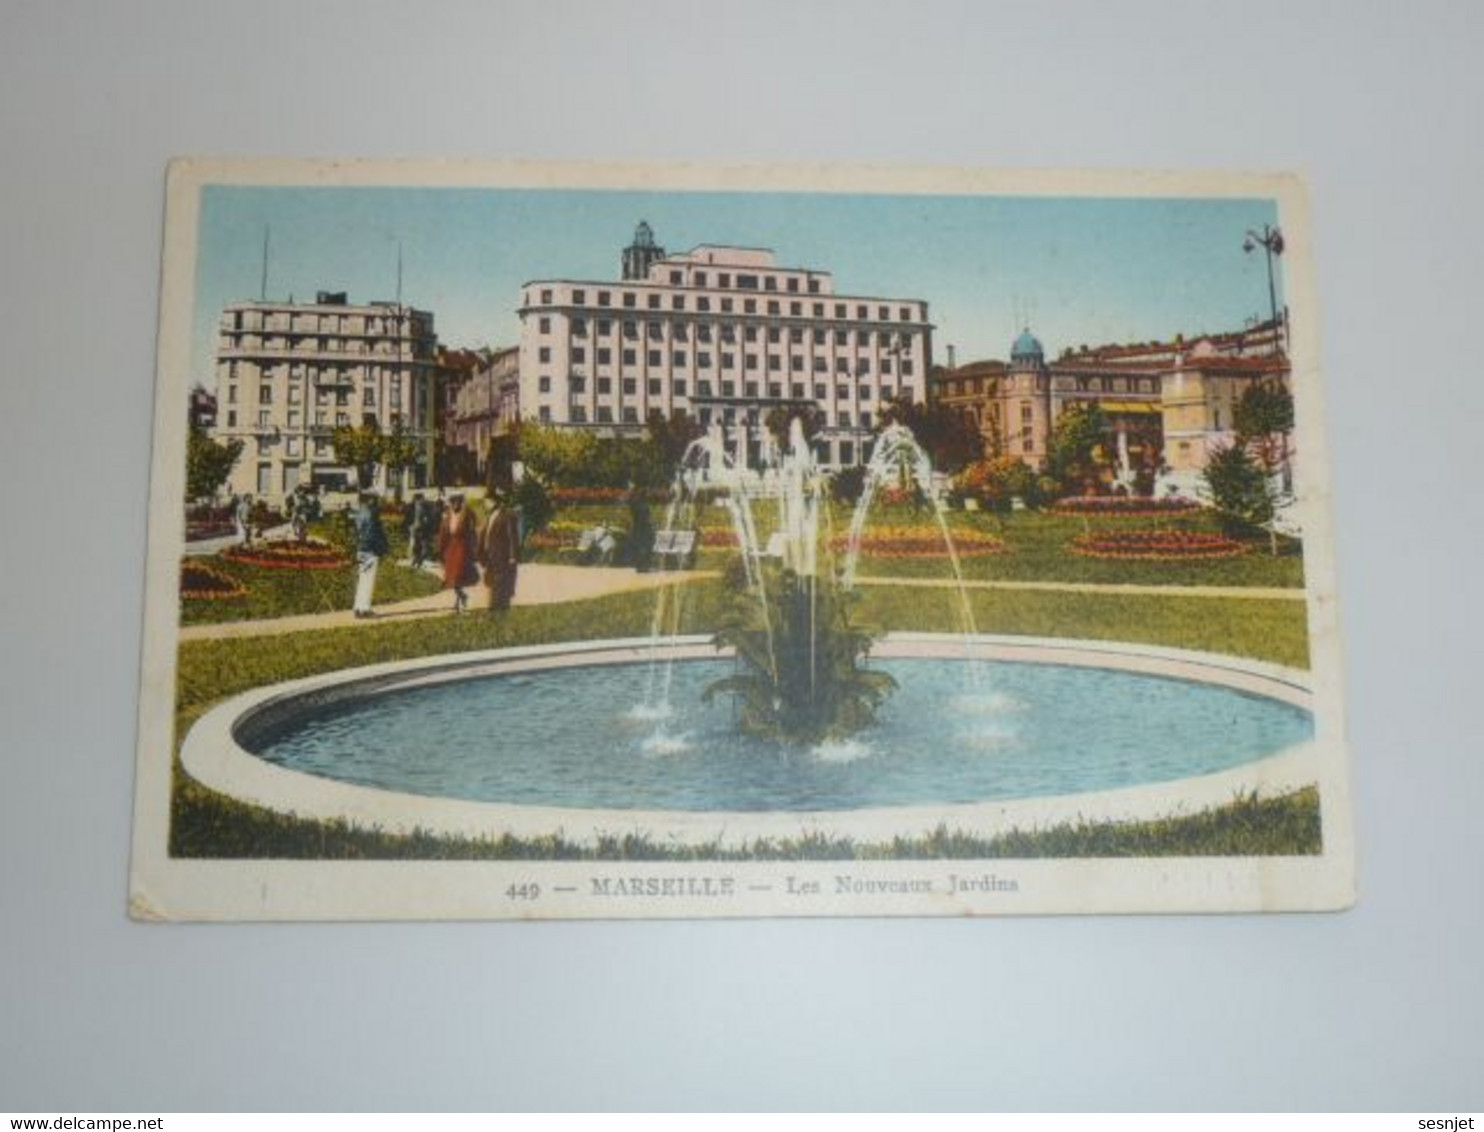 Marseille - Les Nouveaux Jardins - 449 - Editions Adia - - Parks